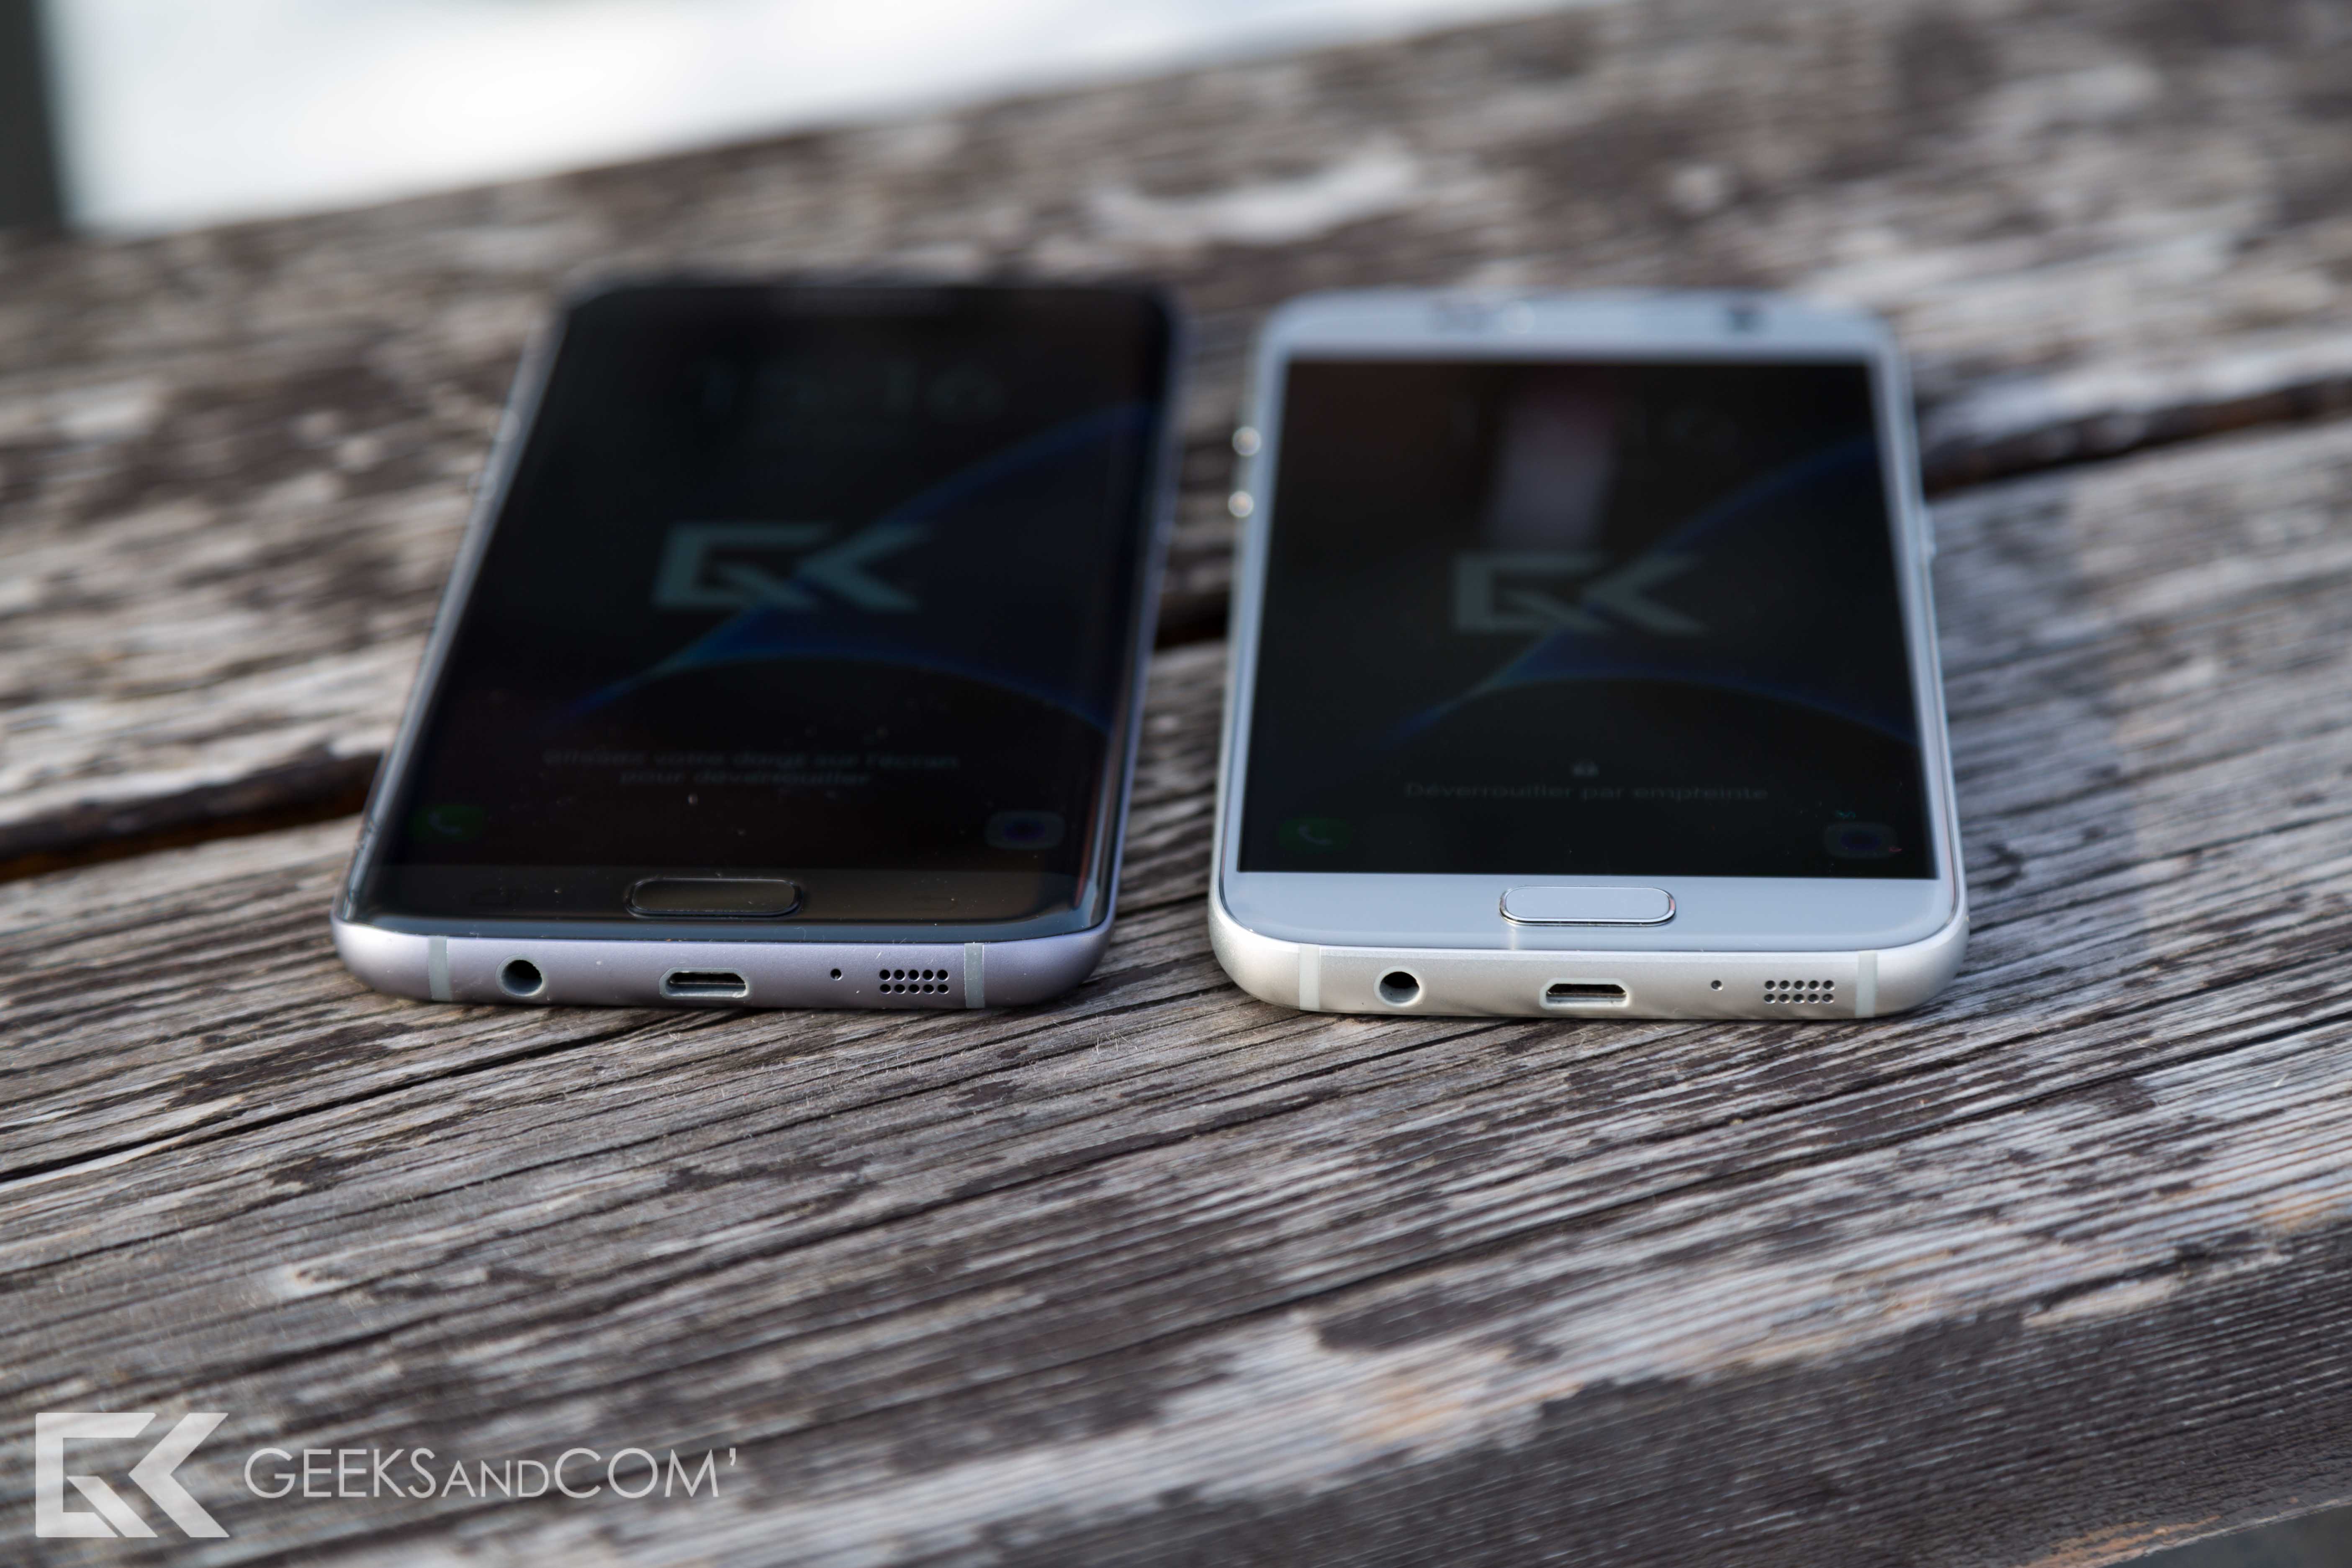 Samsung Galaxy S7 edge (à gauche) vs Samsung Galaxy S7 (à droite)